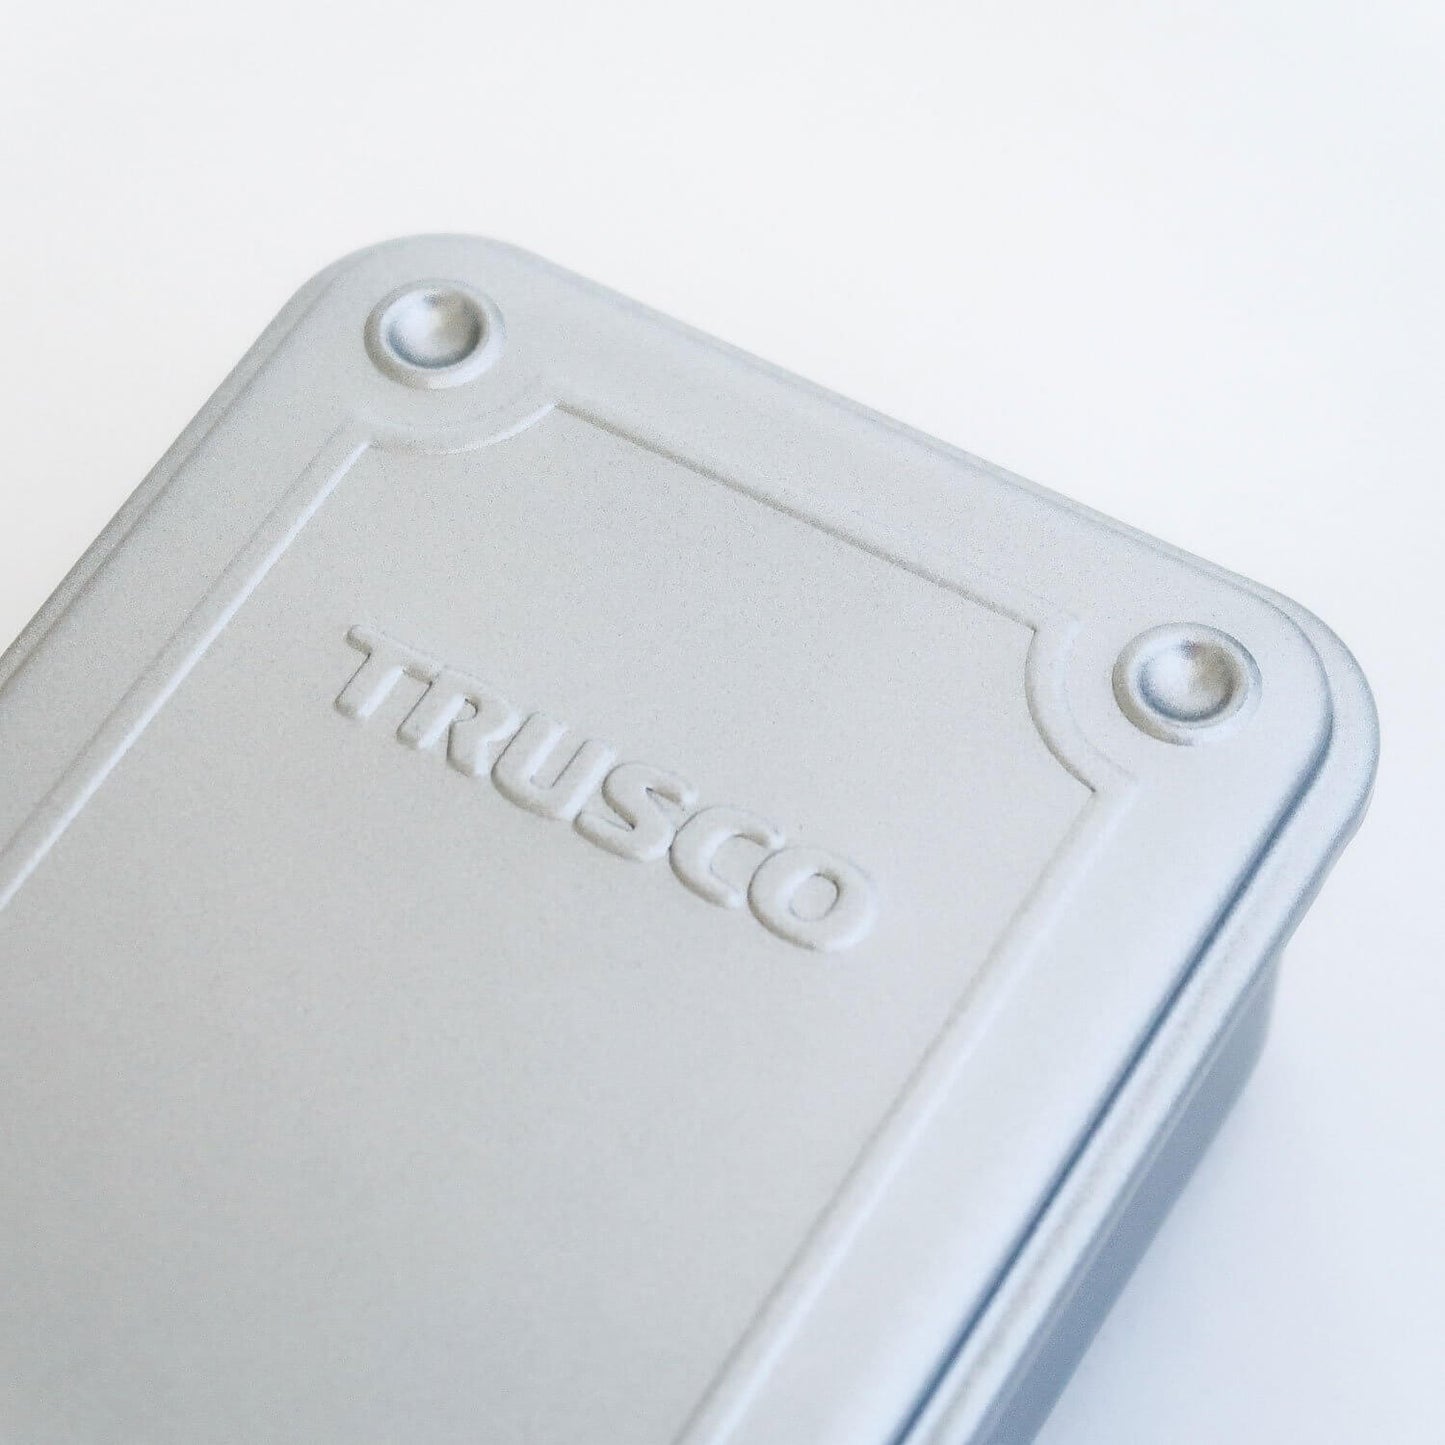 TRUSCO Steel Small Tool Box T-190